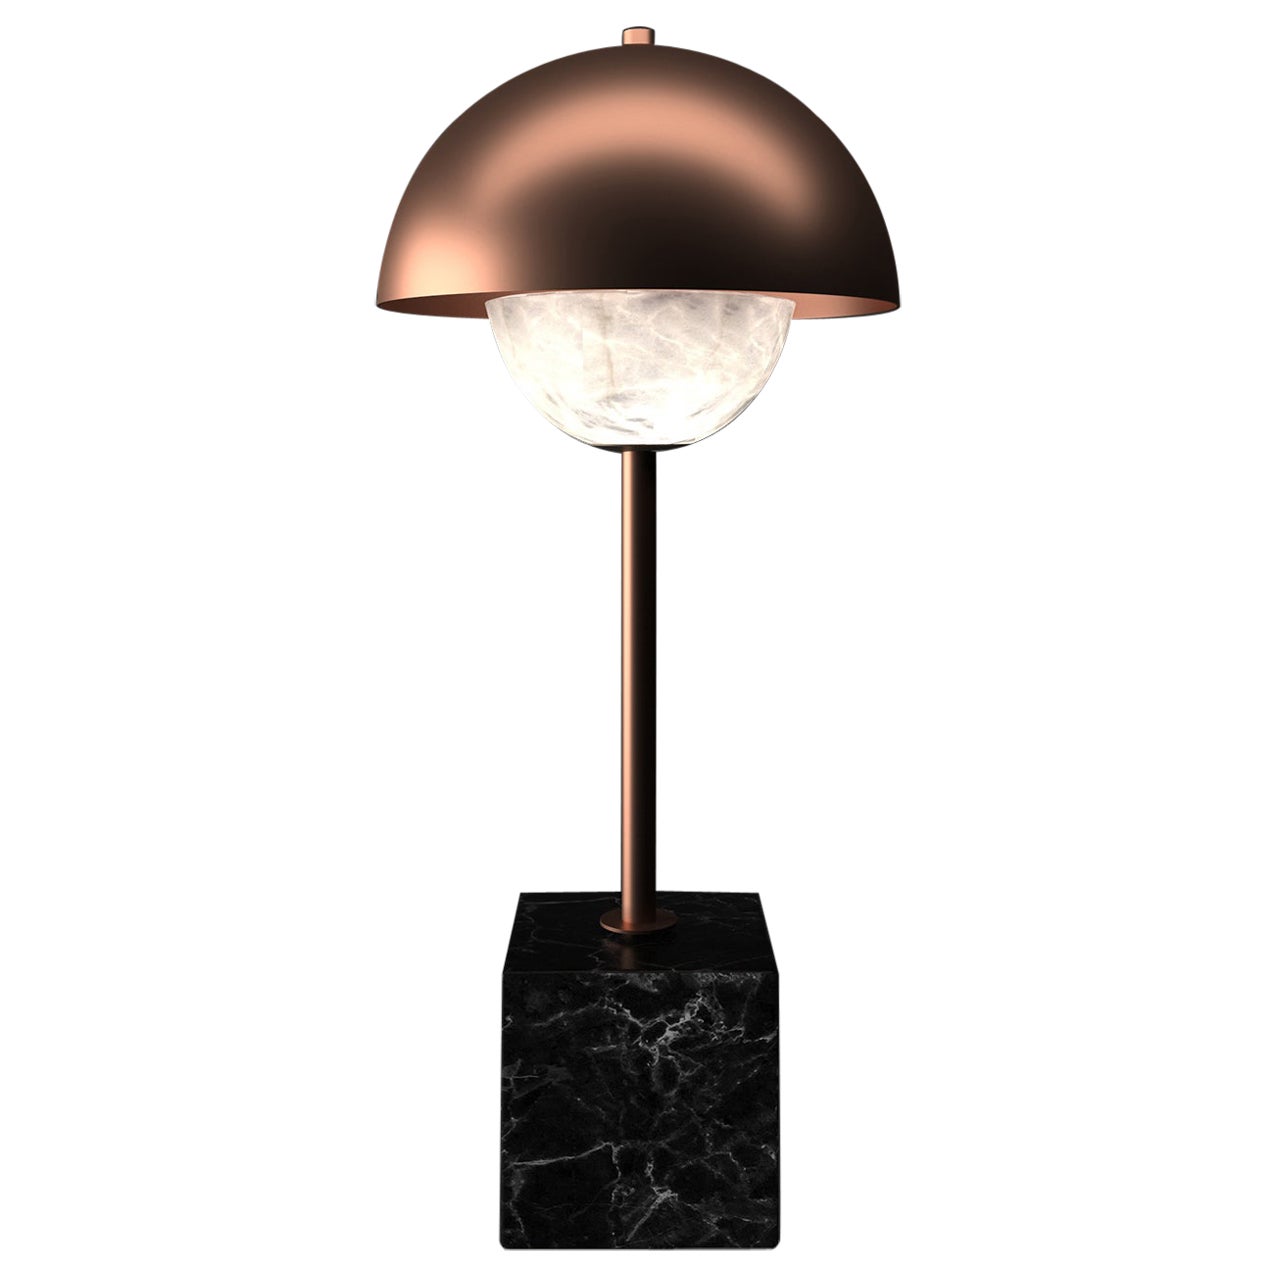 Apollo Copper Table Lamp by Alabastro Italiano